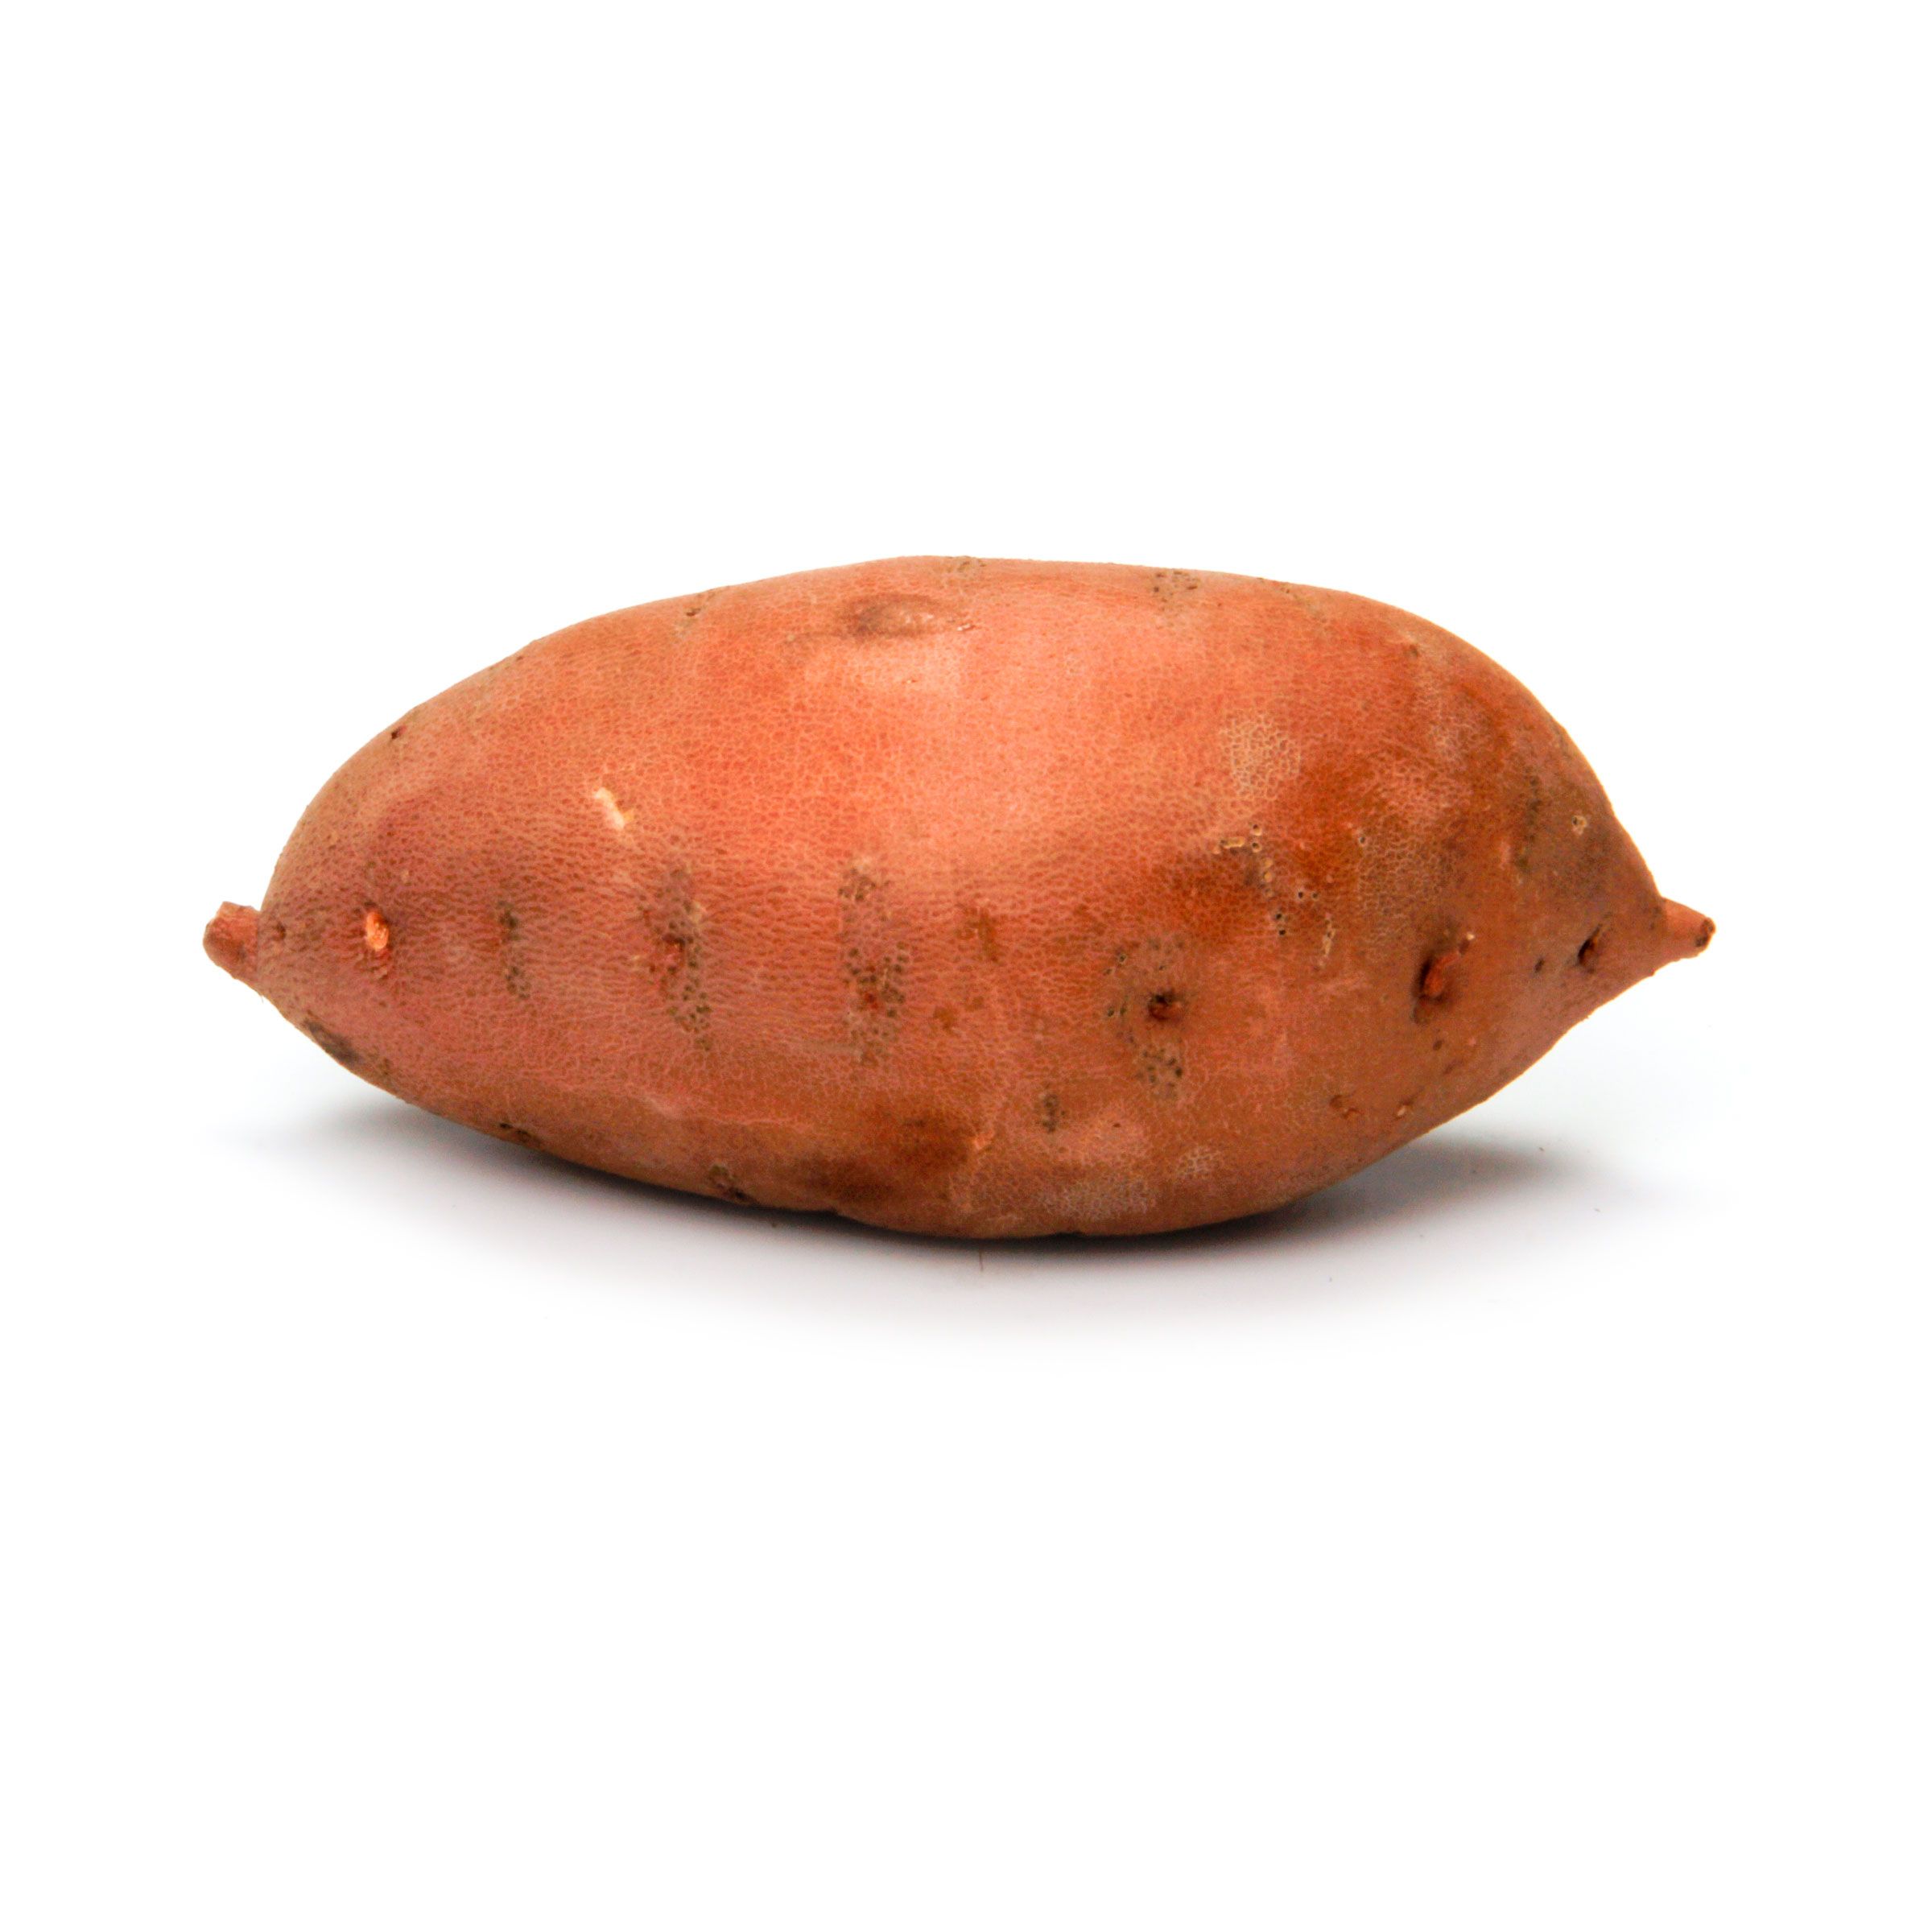 Sweet potato, brown skin (Ipomoes batatas) Image